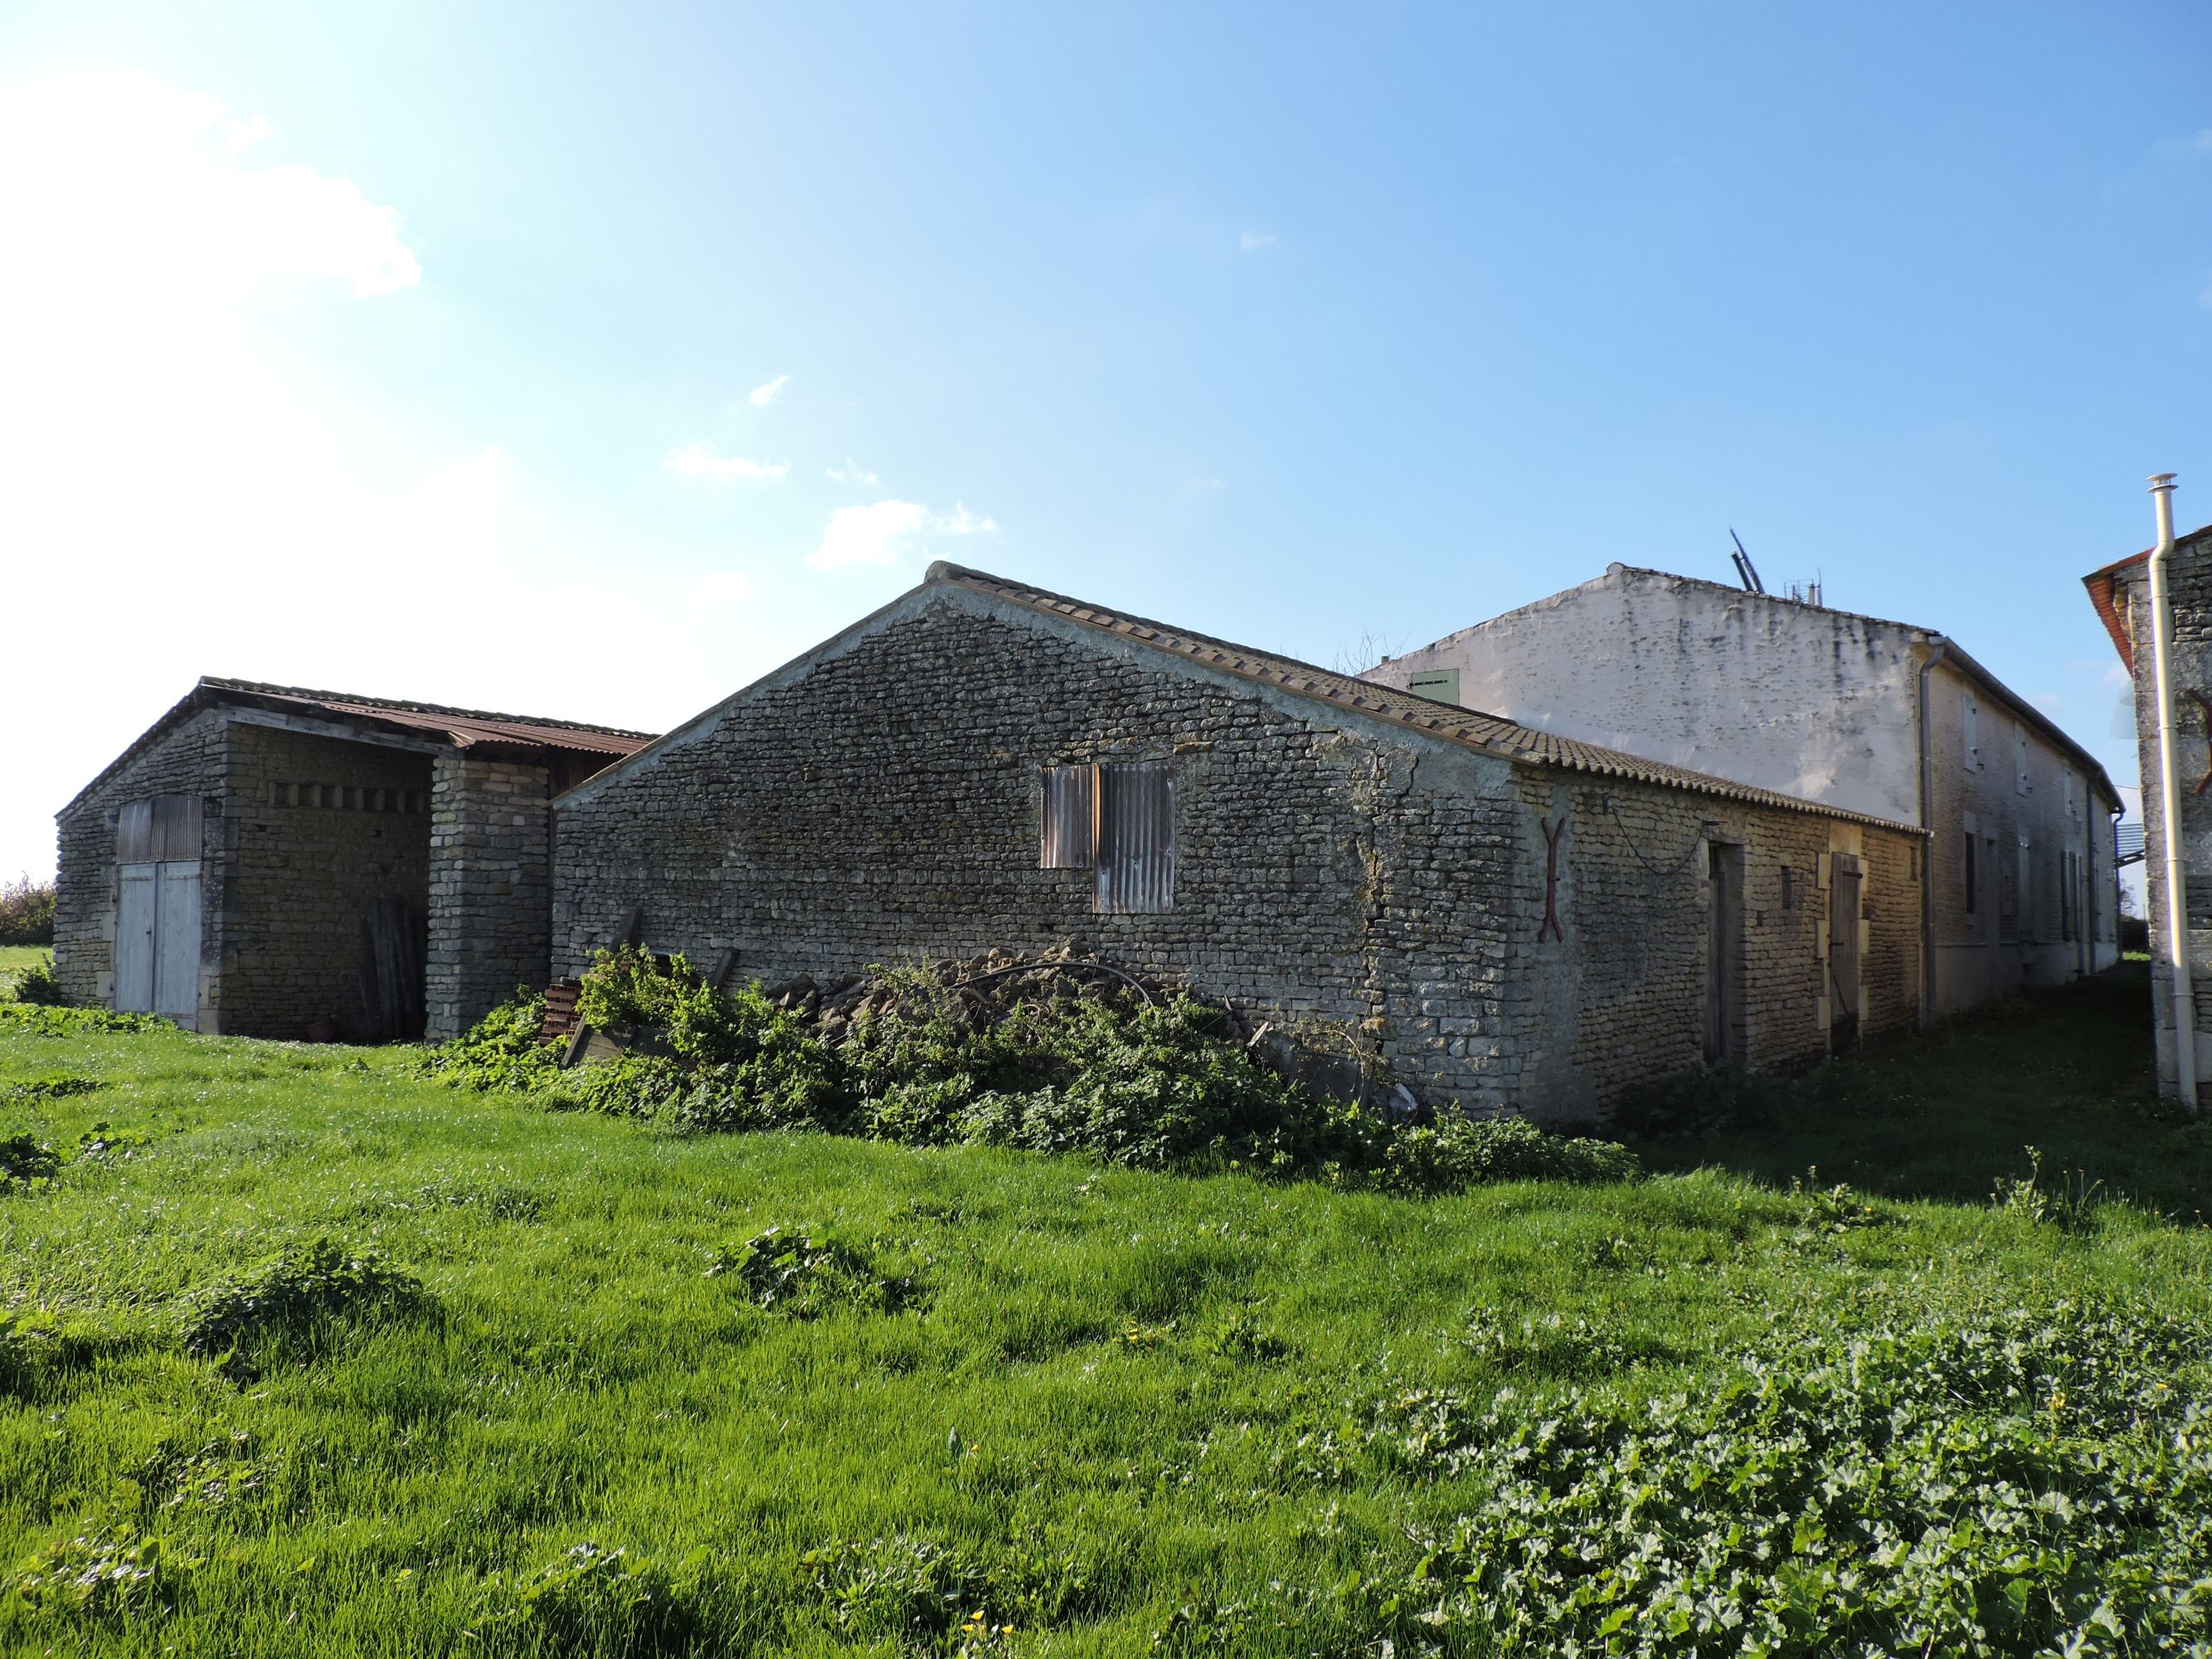 Moulin de la Pichonnière, ferme, actuellement maison